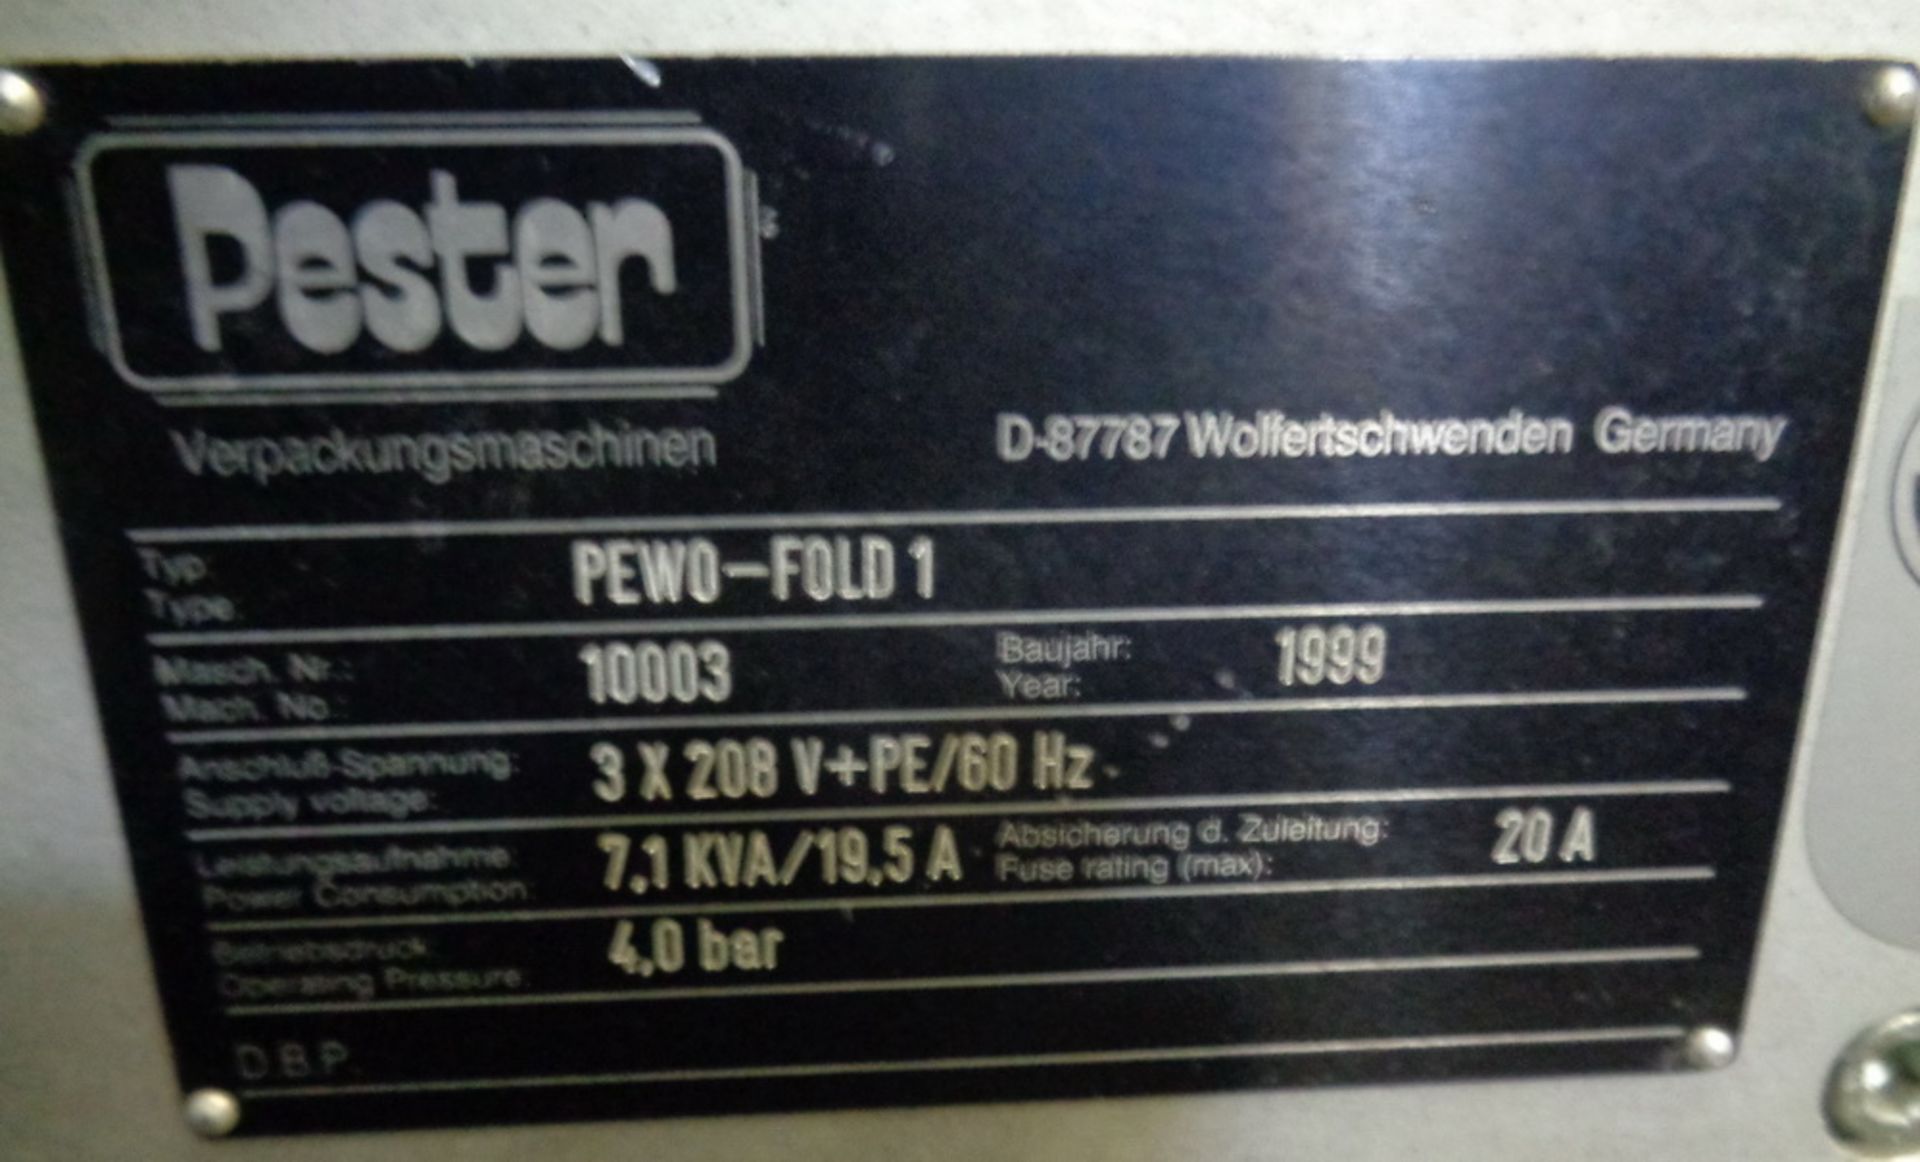 Pester Full Overwrapper, Model PEWO-FOLD 1, S/N 10003 - Image 11 of 16